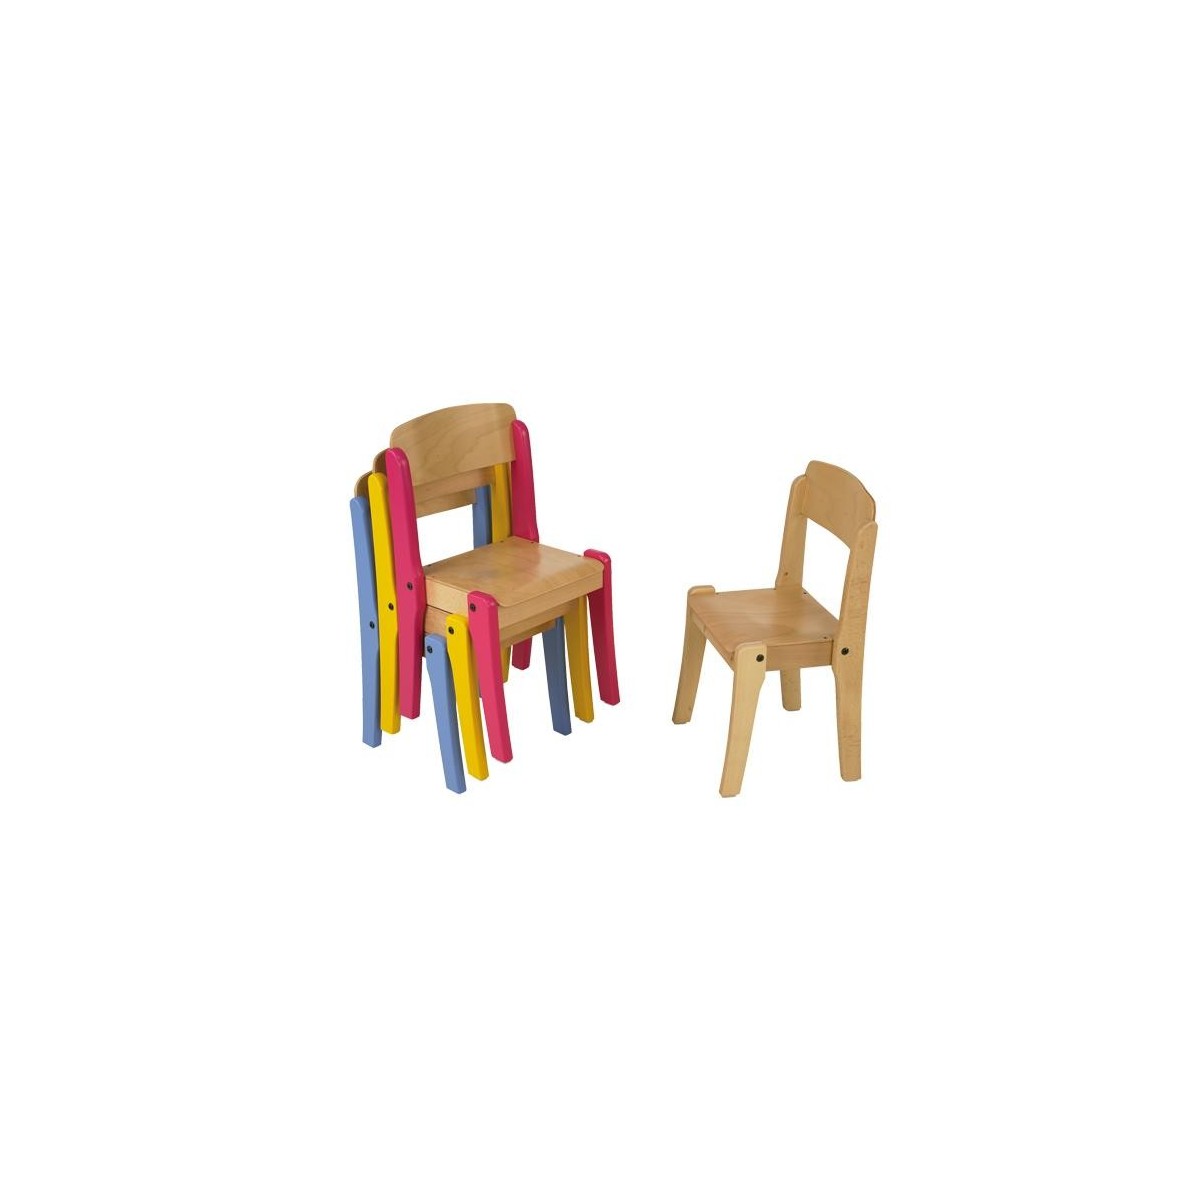 Petite chaise enfant en bois massif -Artisanale & écologique - L